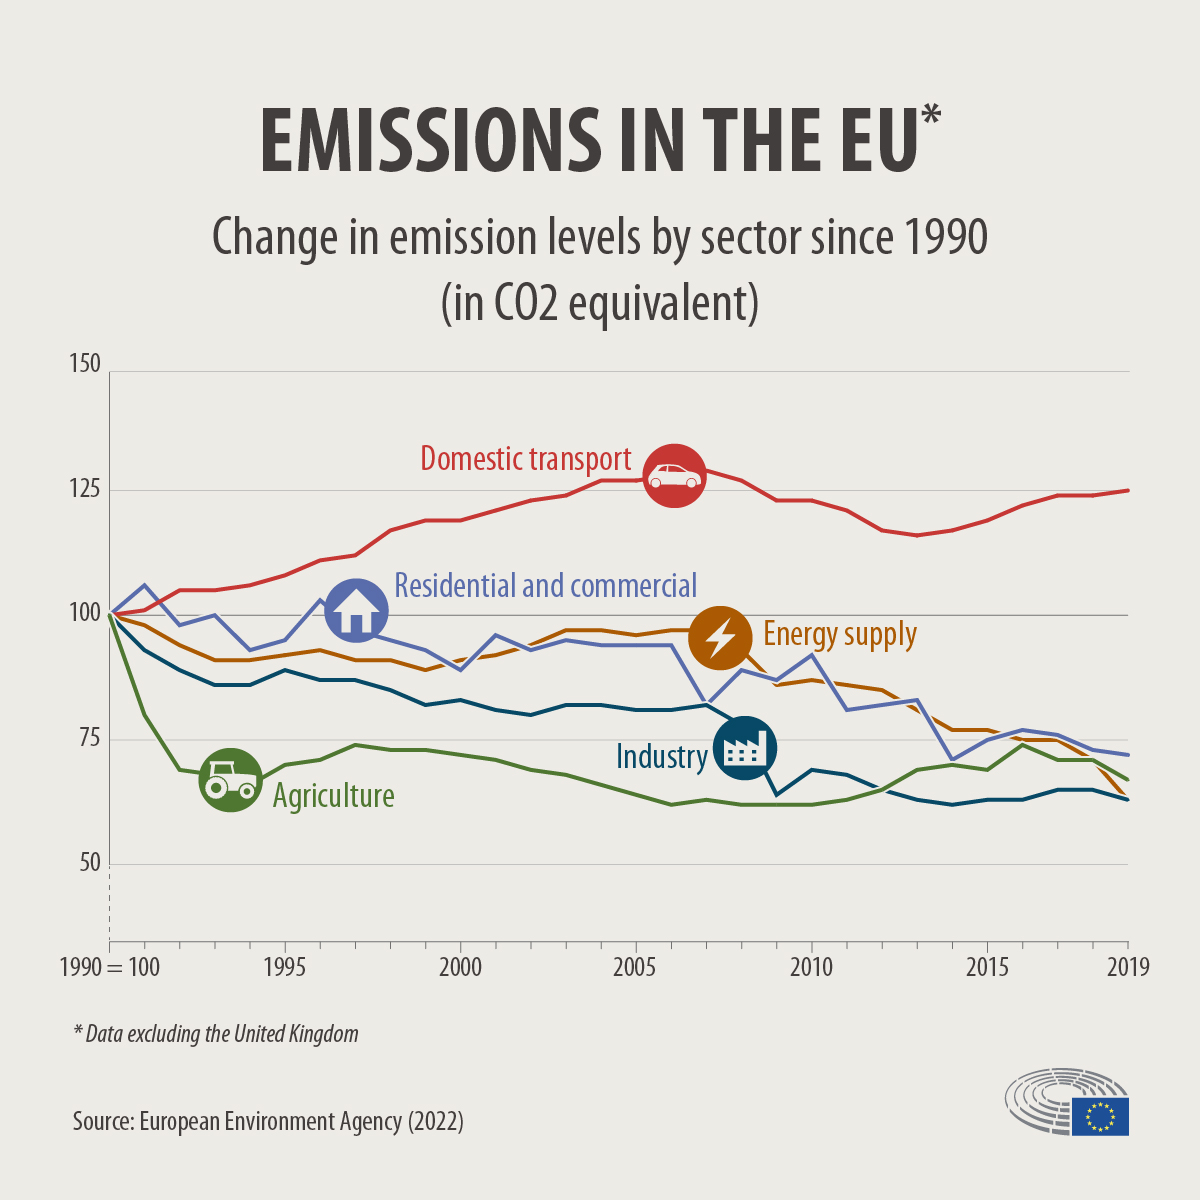 在1990到2019年間，居家、能源、農業、工業等碳排放源都逐年減少，唯獨只有「道路運輸」類別碳排放量不減反增